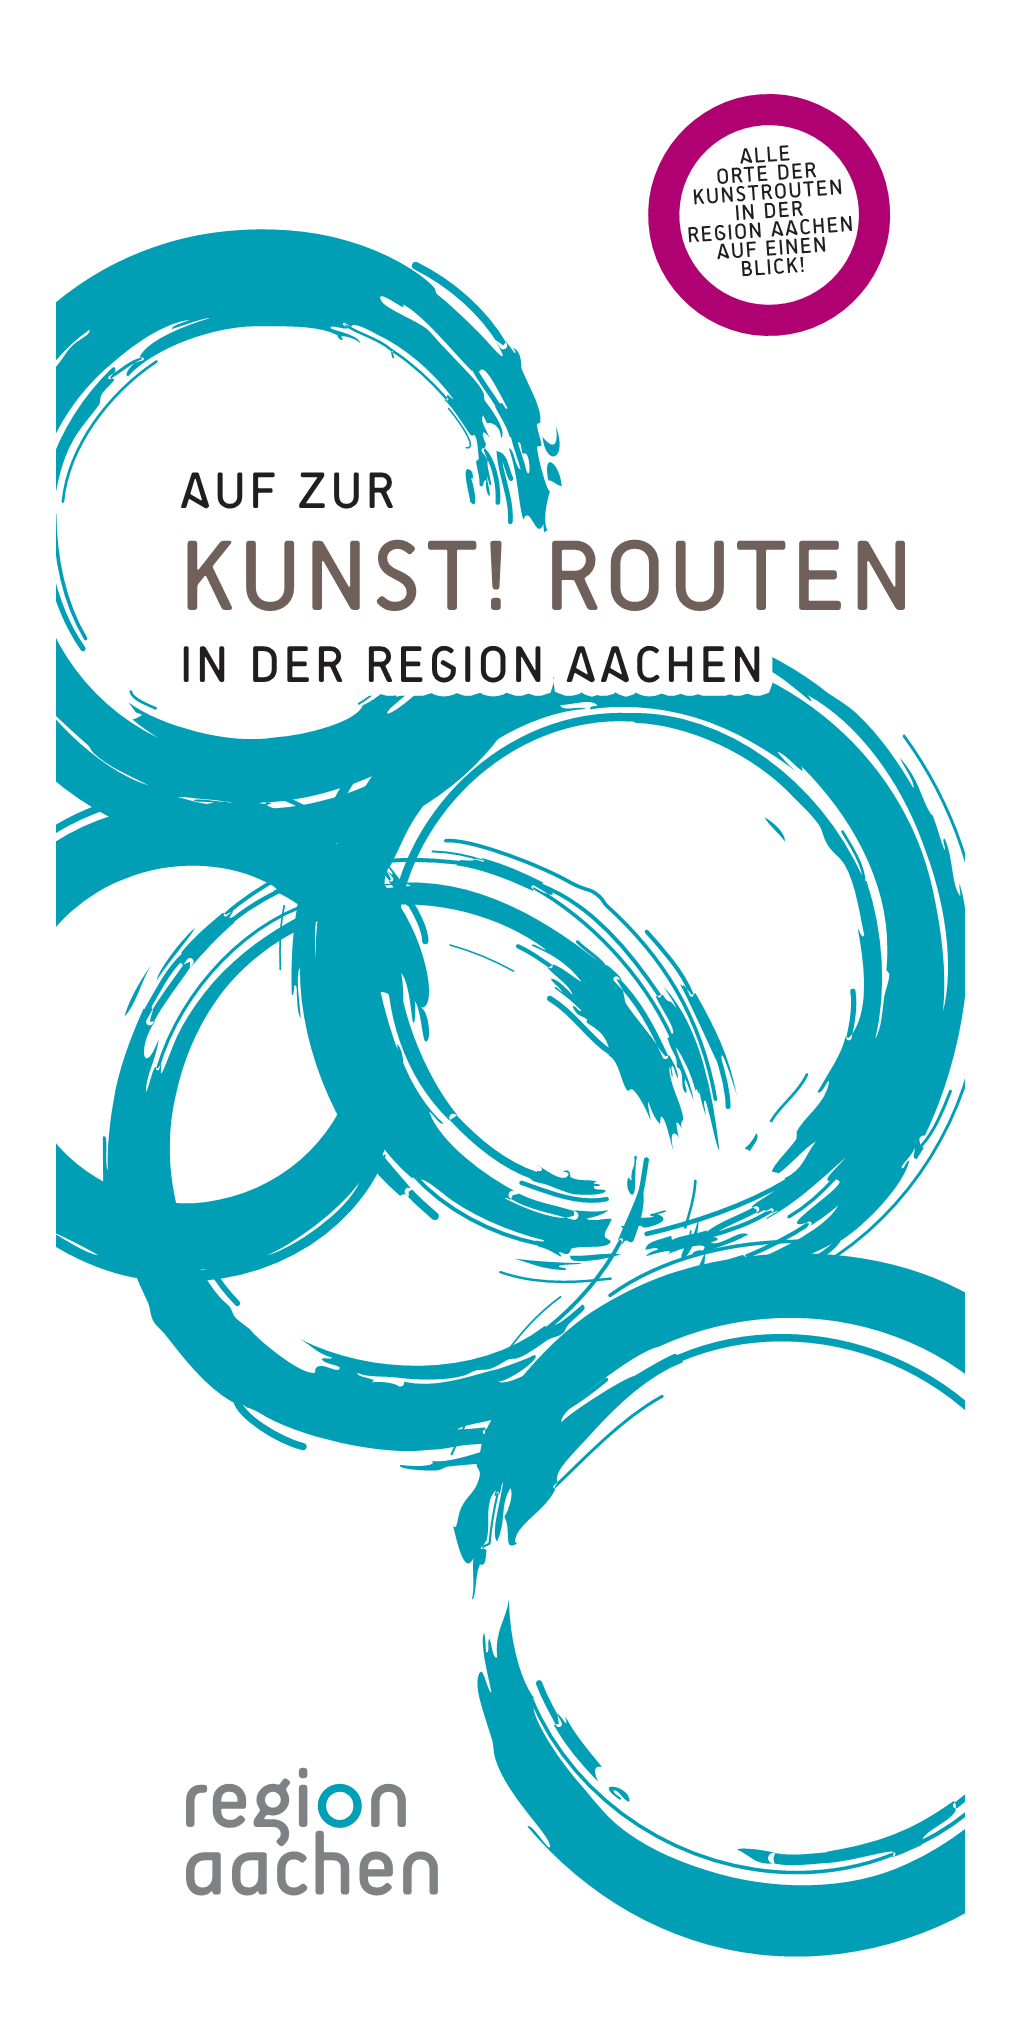 Alle Orte Der Kunstrouten in Der Region Aachen Auf Einen Blic K! Auf Zur Kunst! Routen in Der Region Aachen